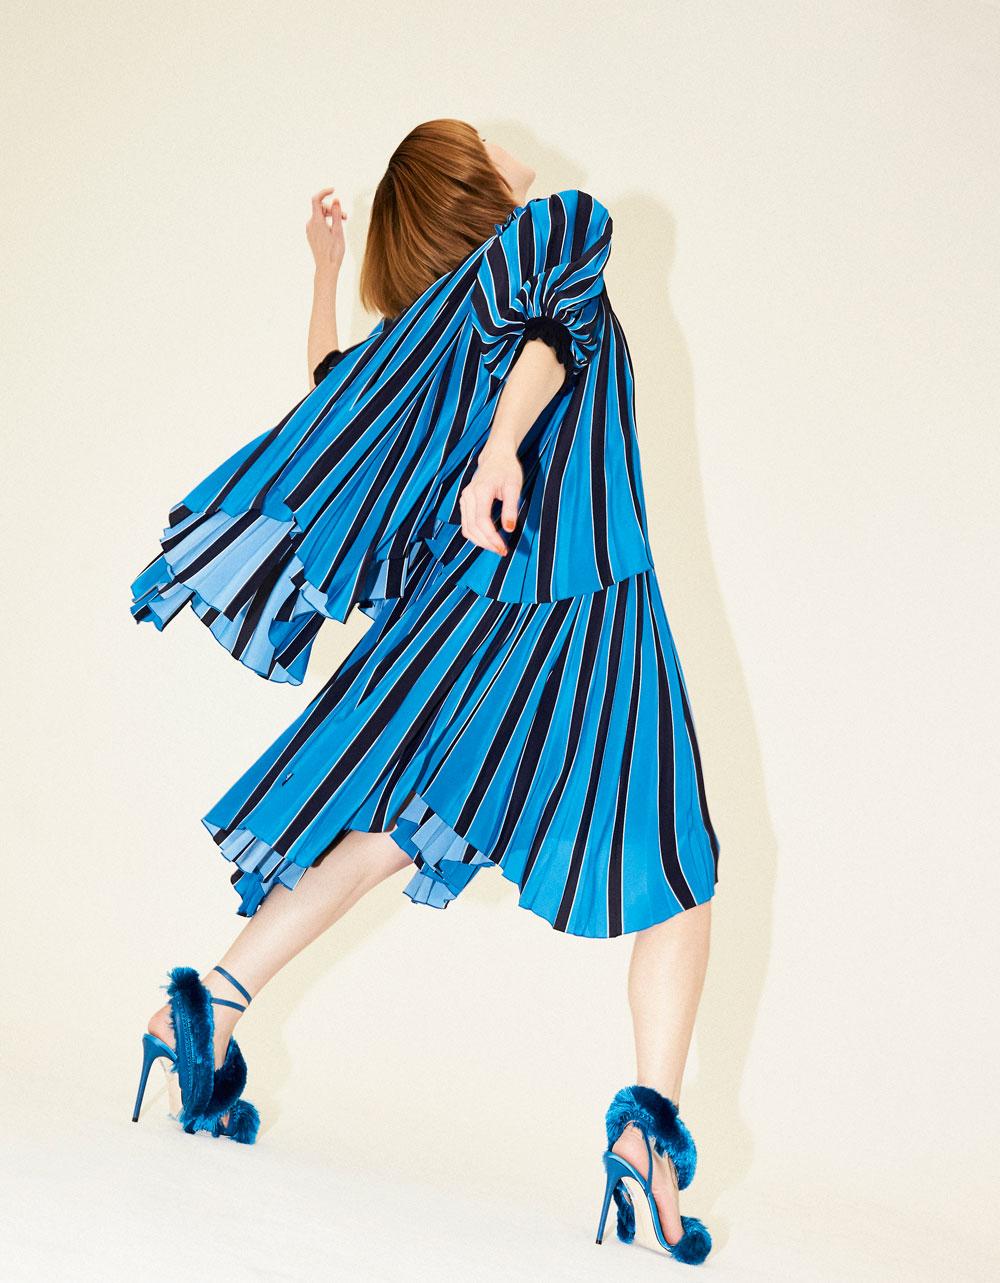 Blauwe, gestreepte plisséjurk met pofmouwen,  Givenchy. Blauwe satijnen sandalen met zijden franjes, Marco de Vincenzo.